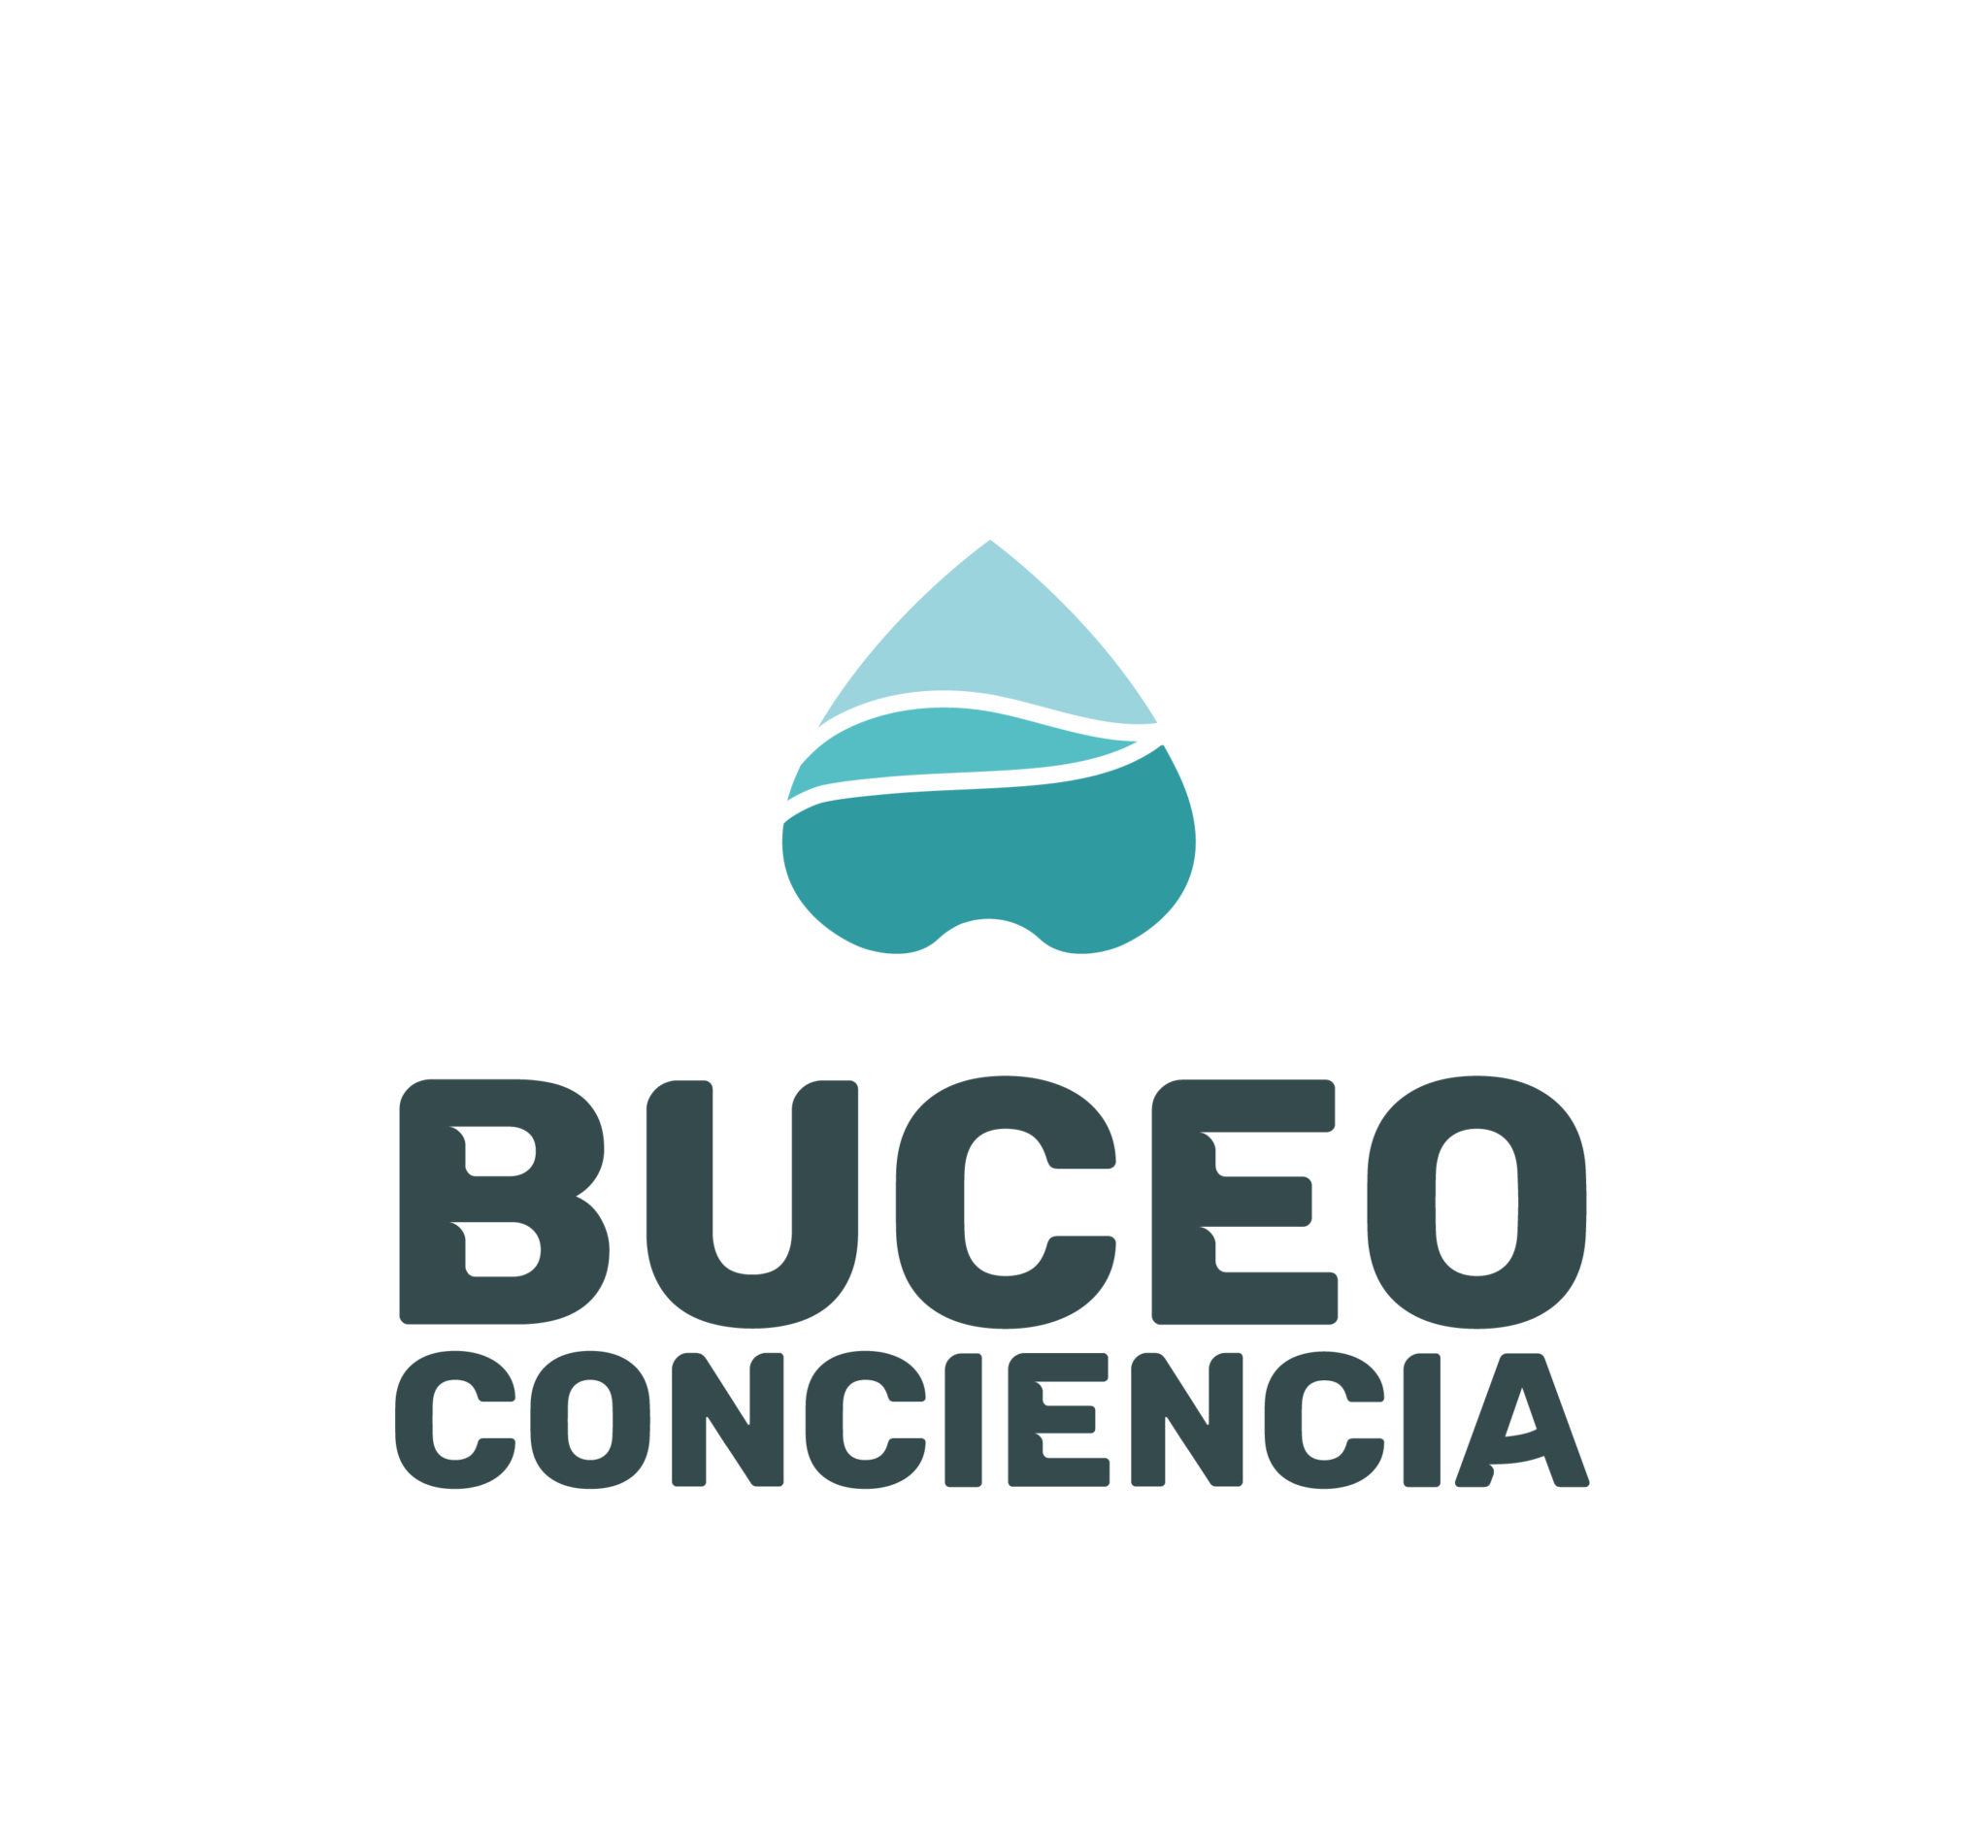 Buceo Conciencia"